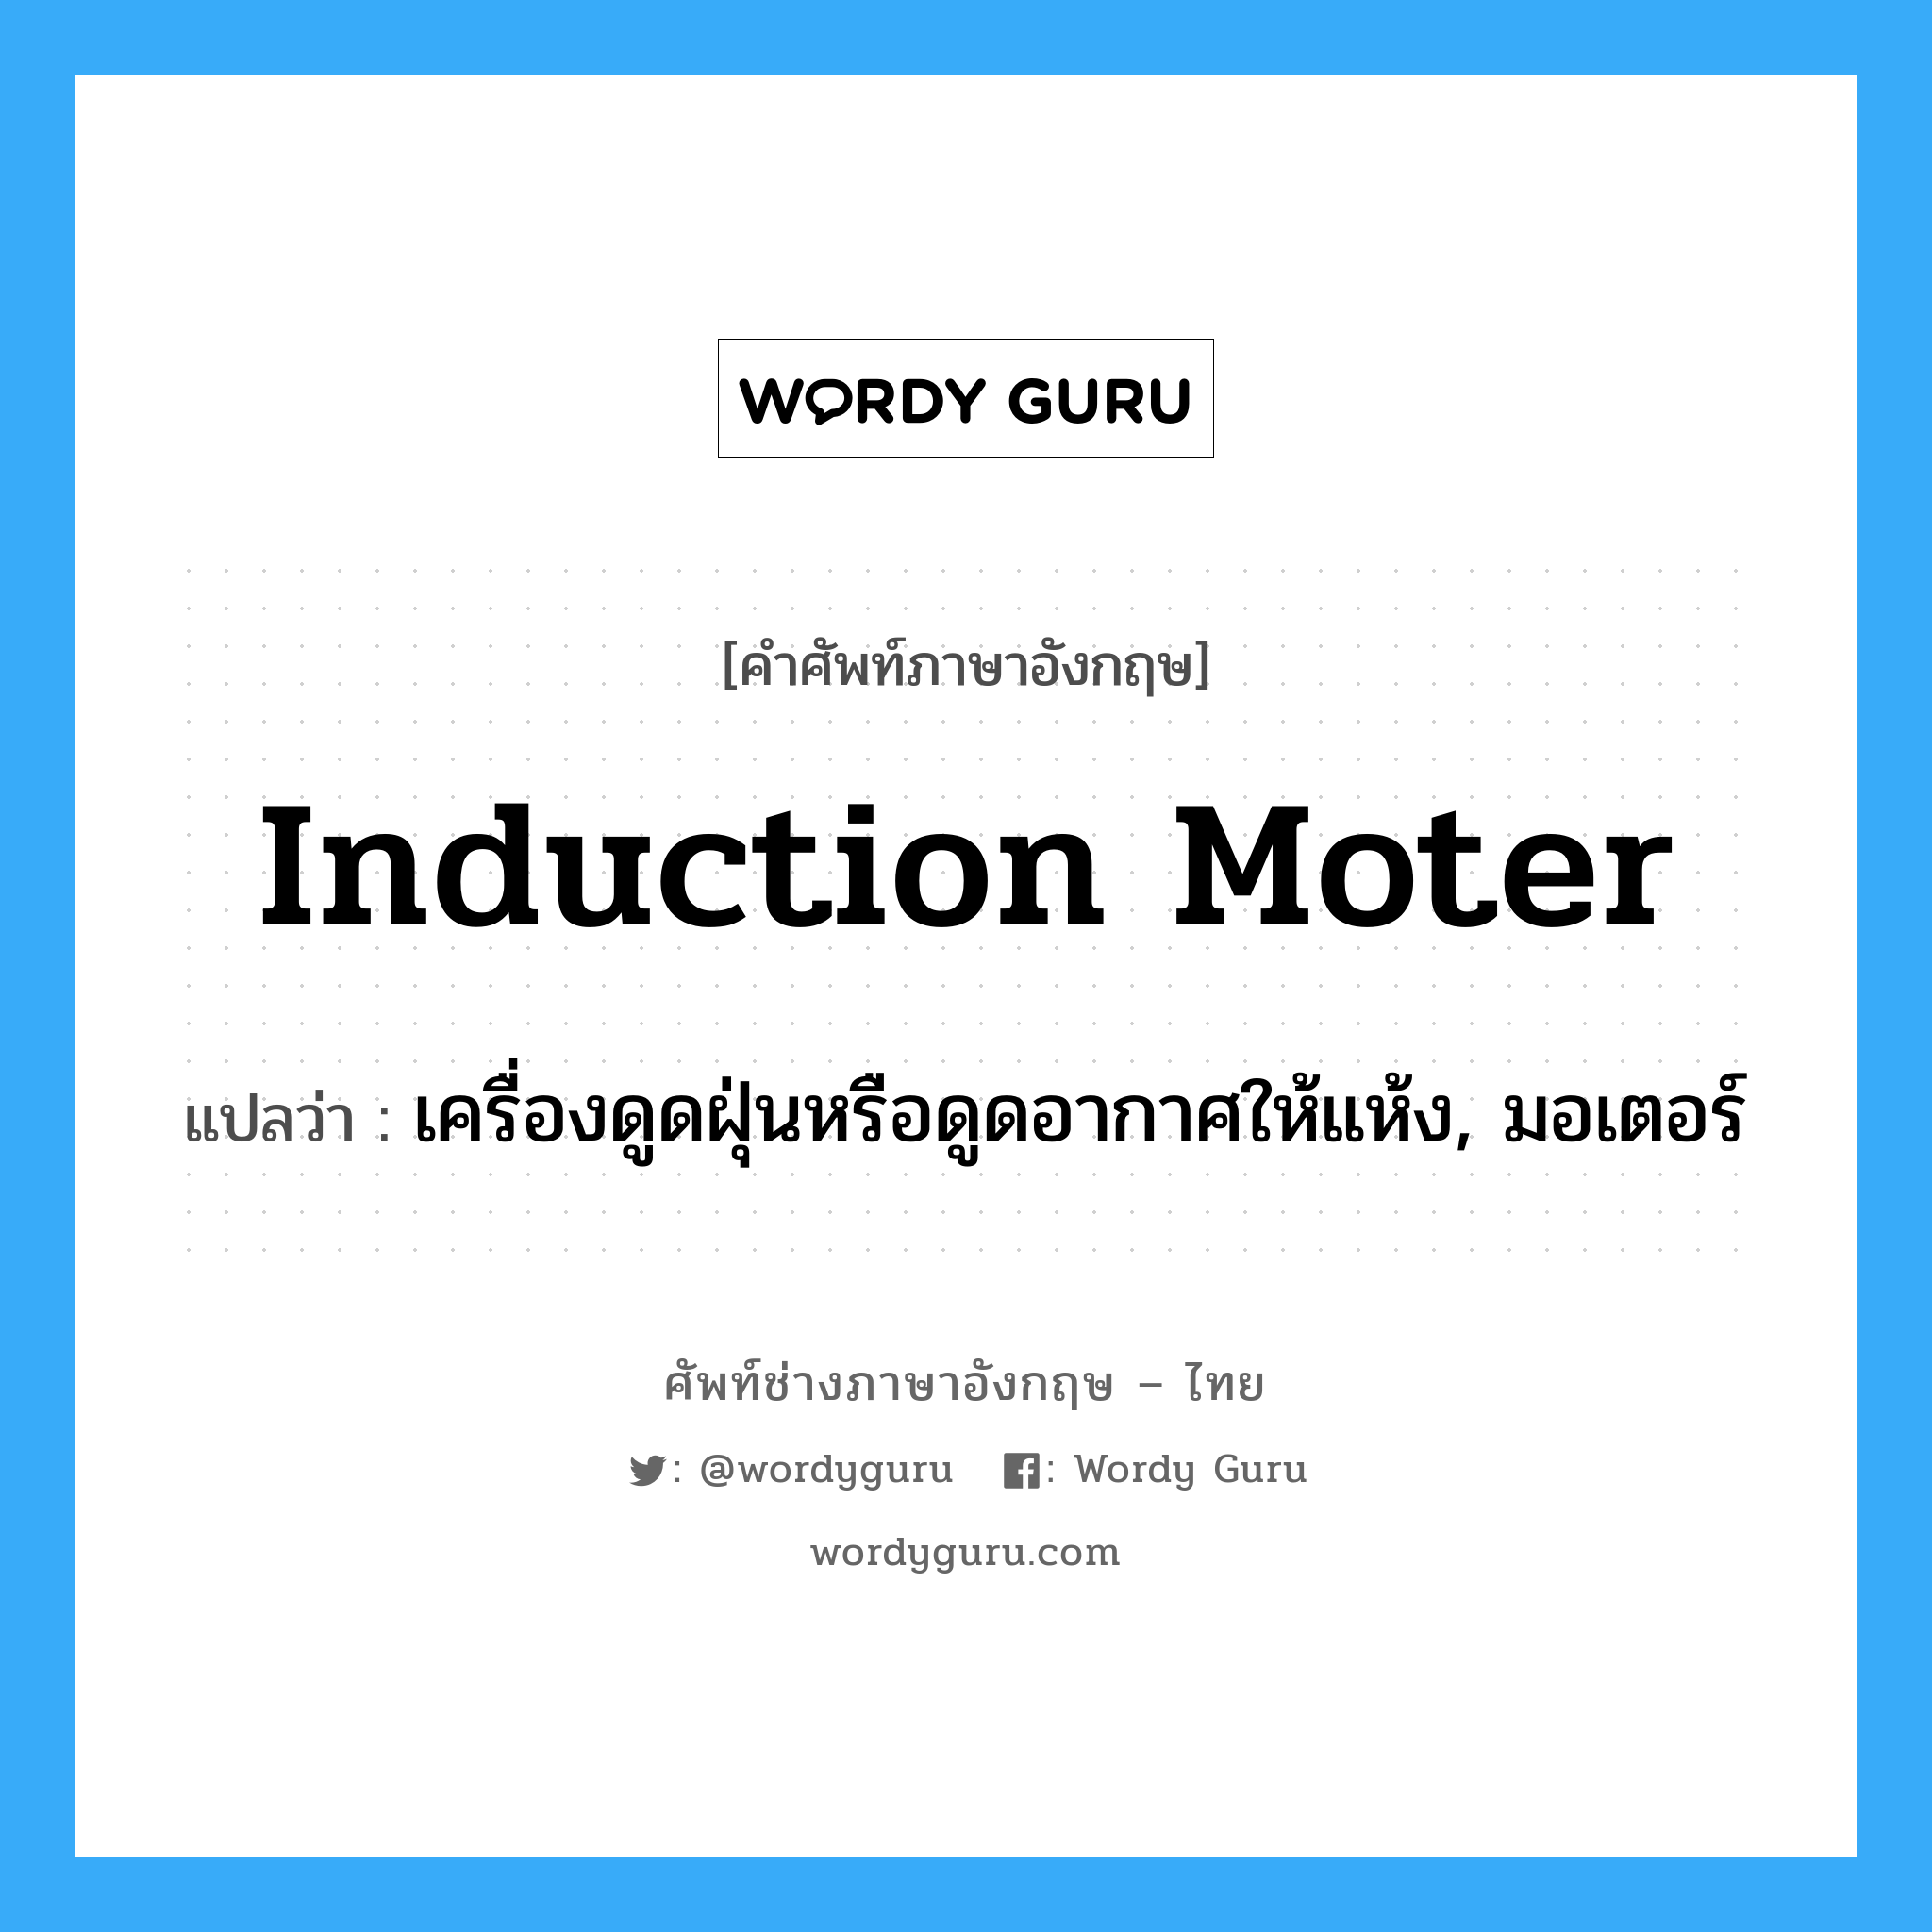 induction moter แปลว่า?, คำศัพท์ช่างภาษาอังกฤษ - ไทย induction moter คำศัพท์ภาษาอังกฤษ induction moter แปลว่า เครื่องดูดฝุ่นหรือดูดอากาศให้แห้ง, มอเตอร์